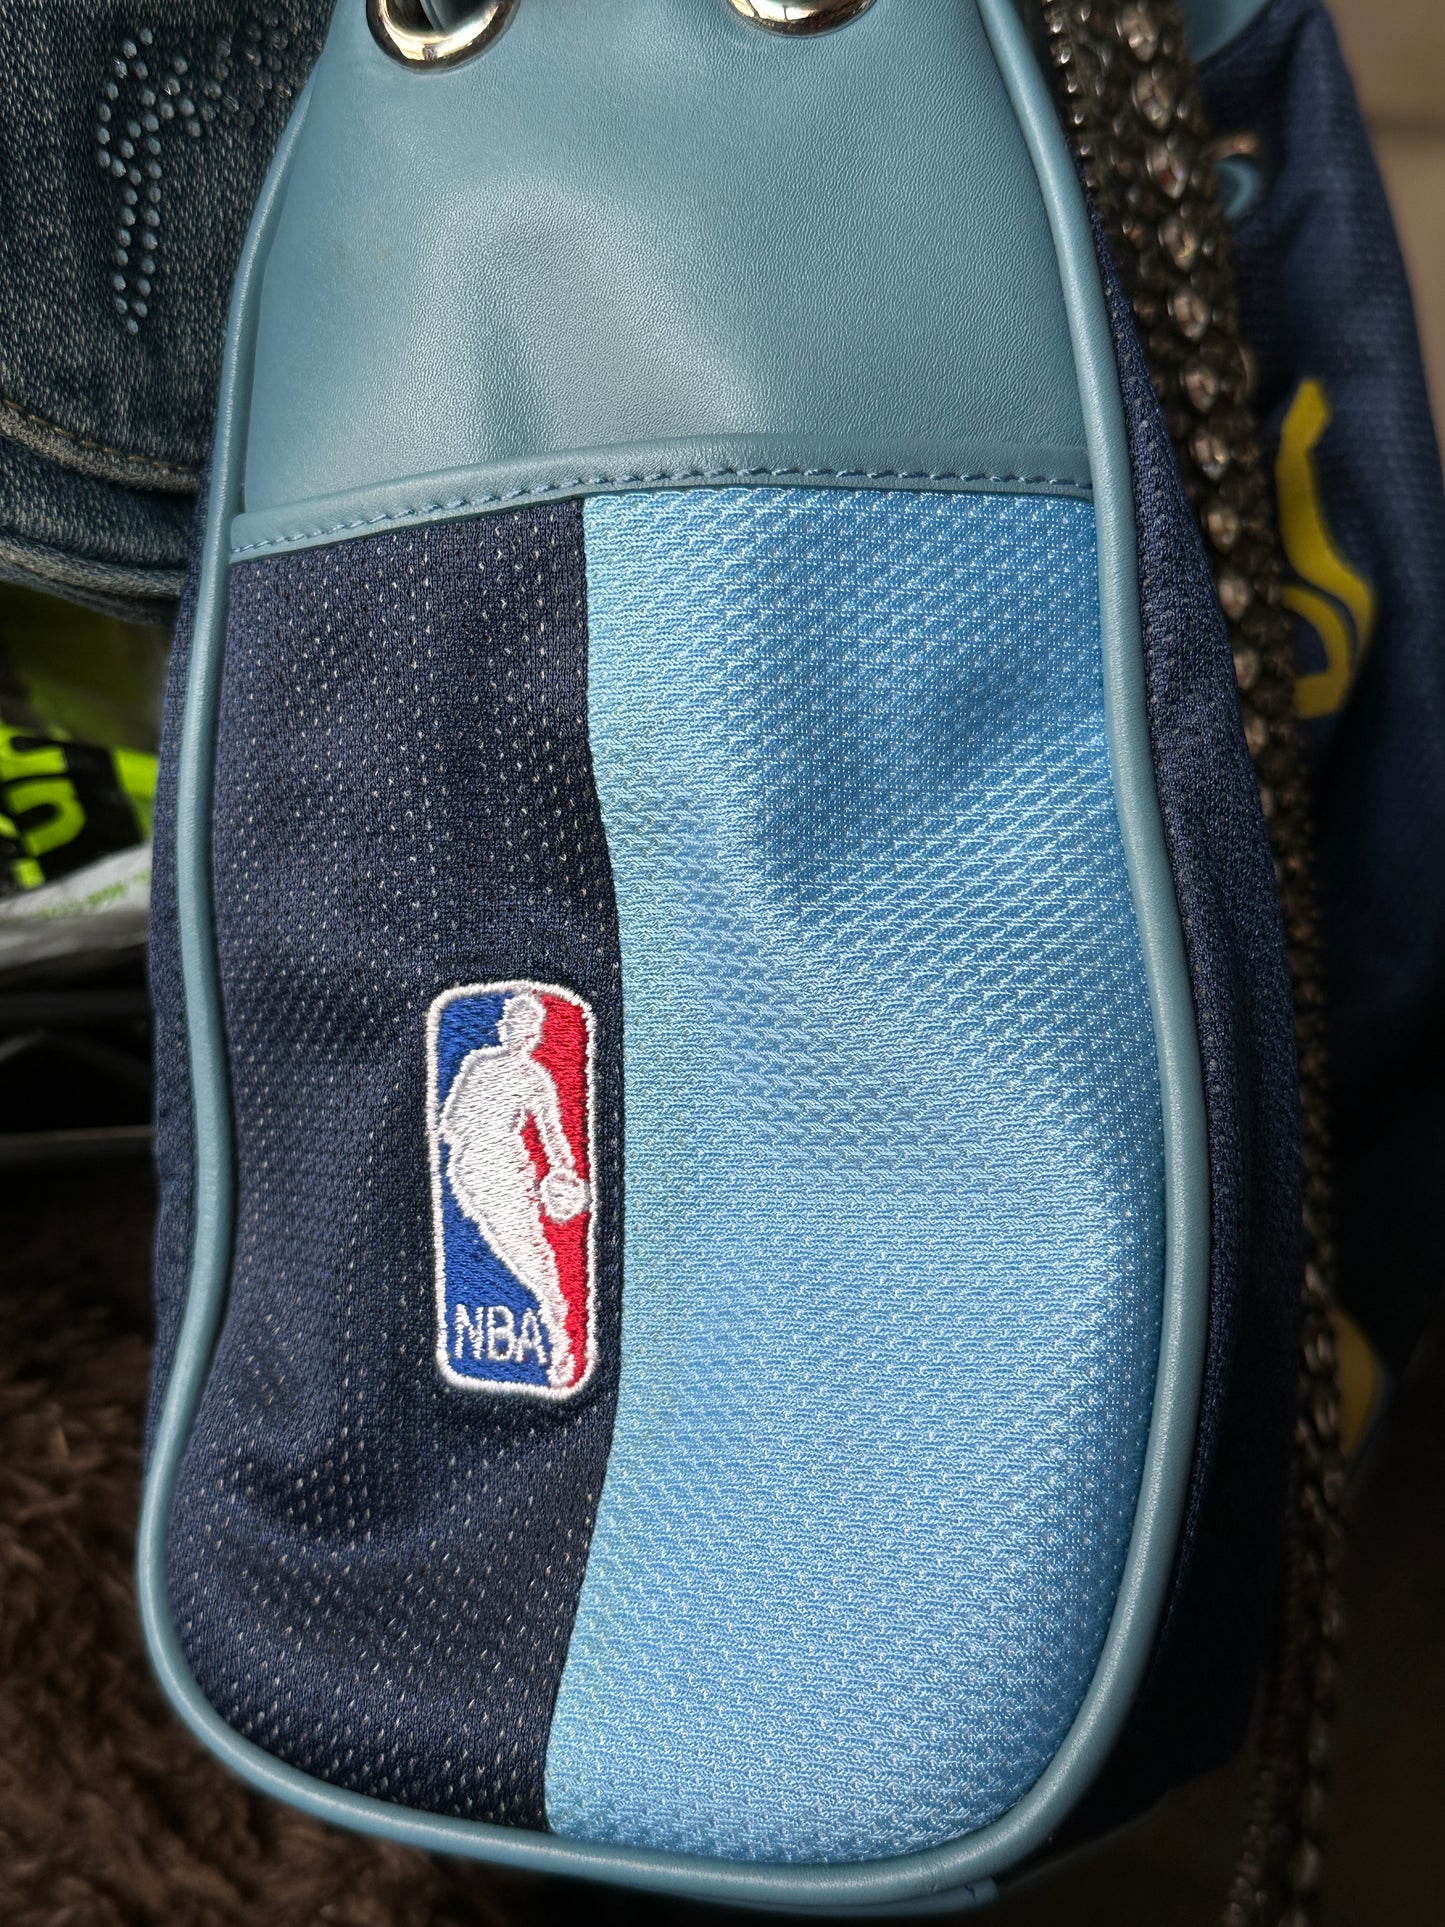 NBA Nuggets Allen Iverson Handbag